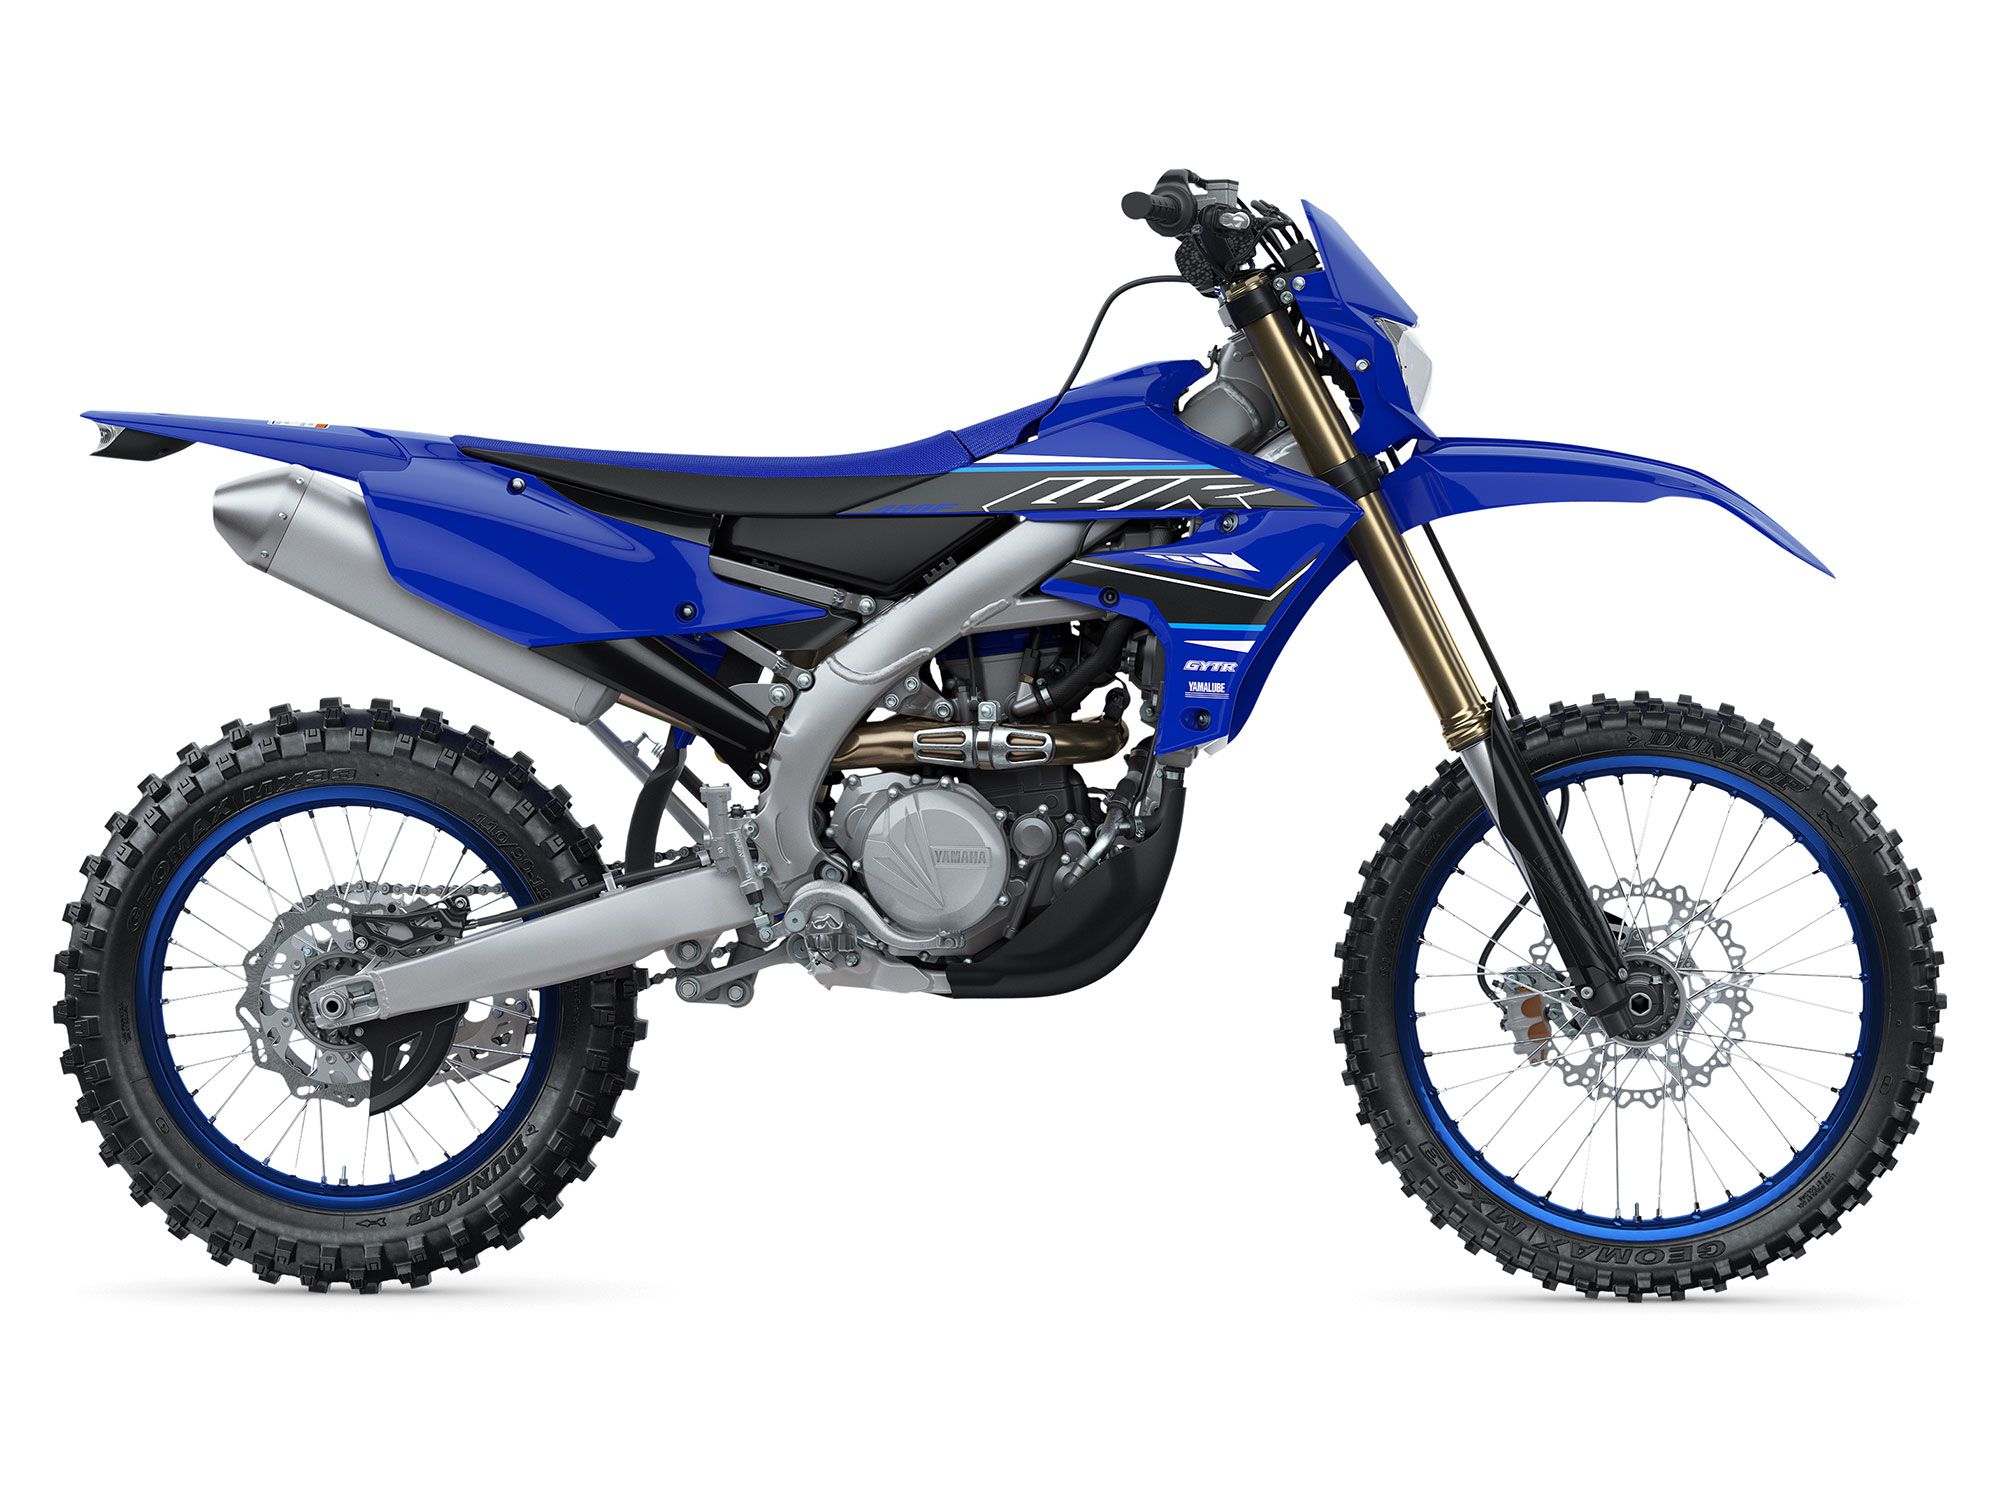 2021 Yamaha Enduro Motorcycles Revealed | Dirt Rider